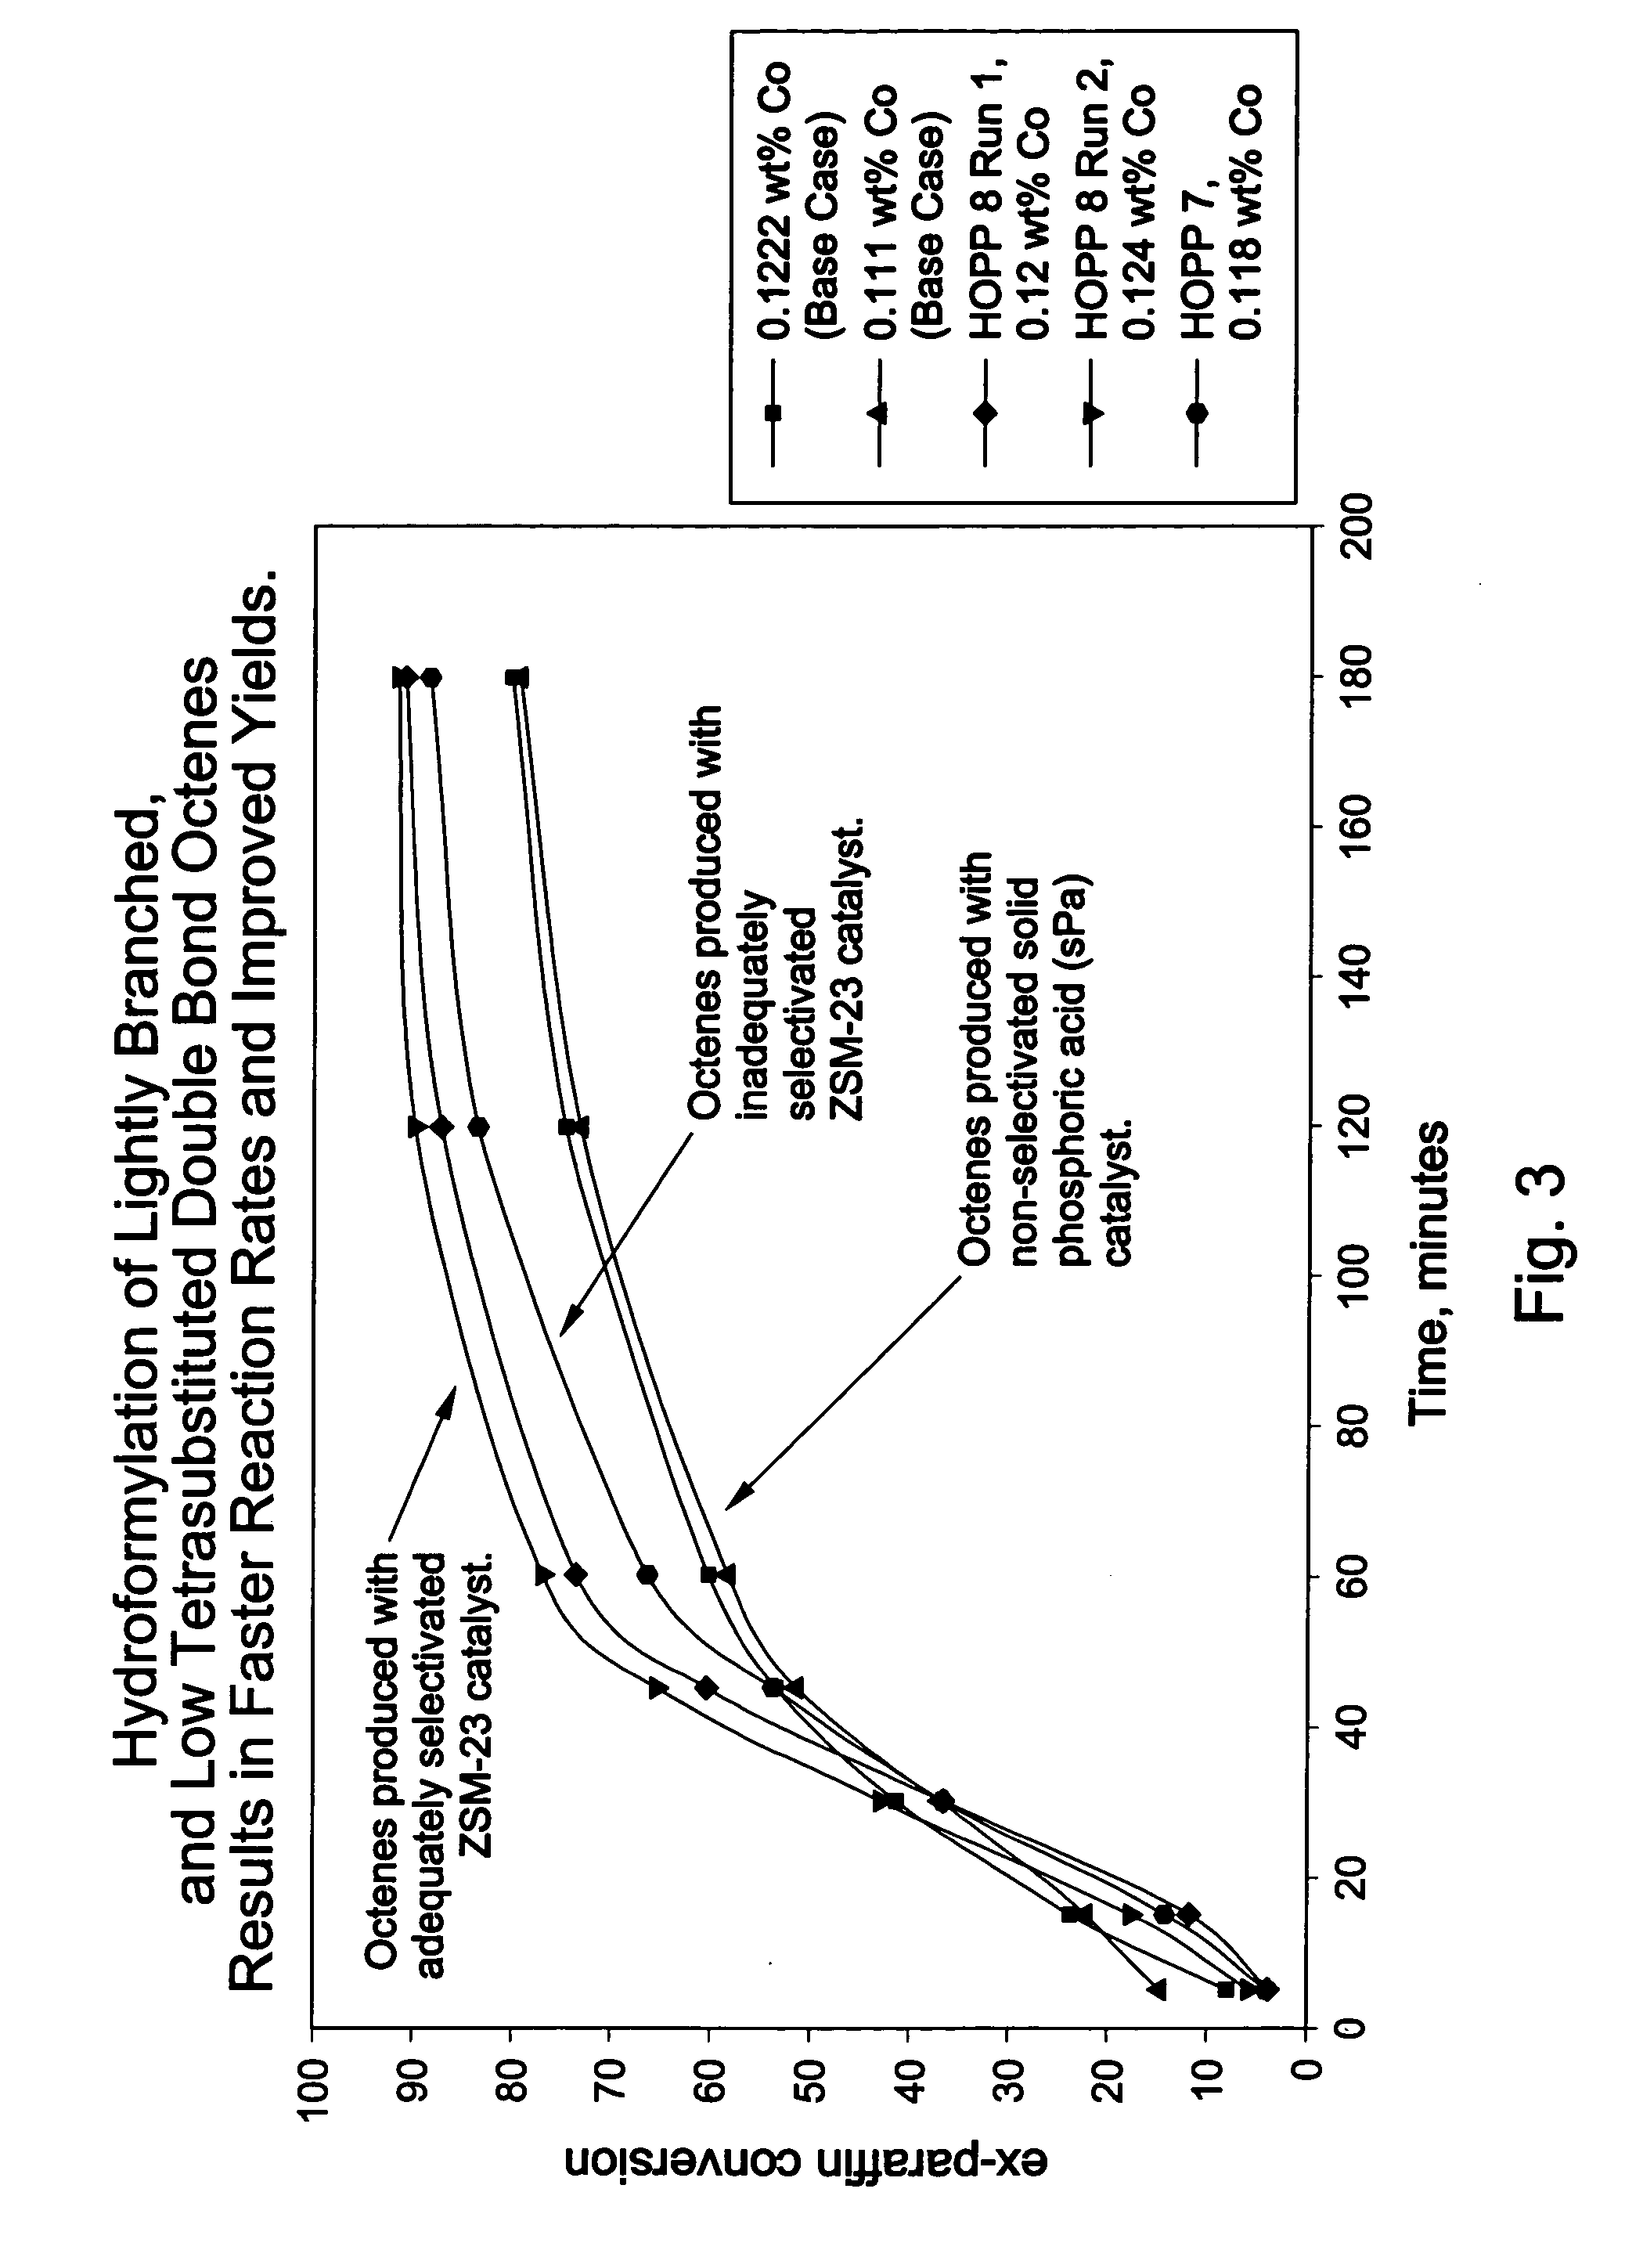 Oligomerization of olefins